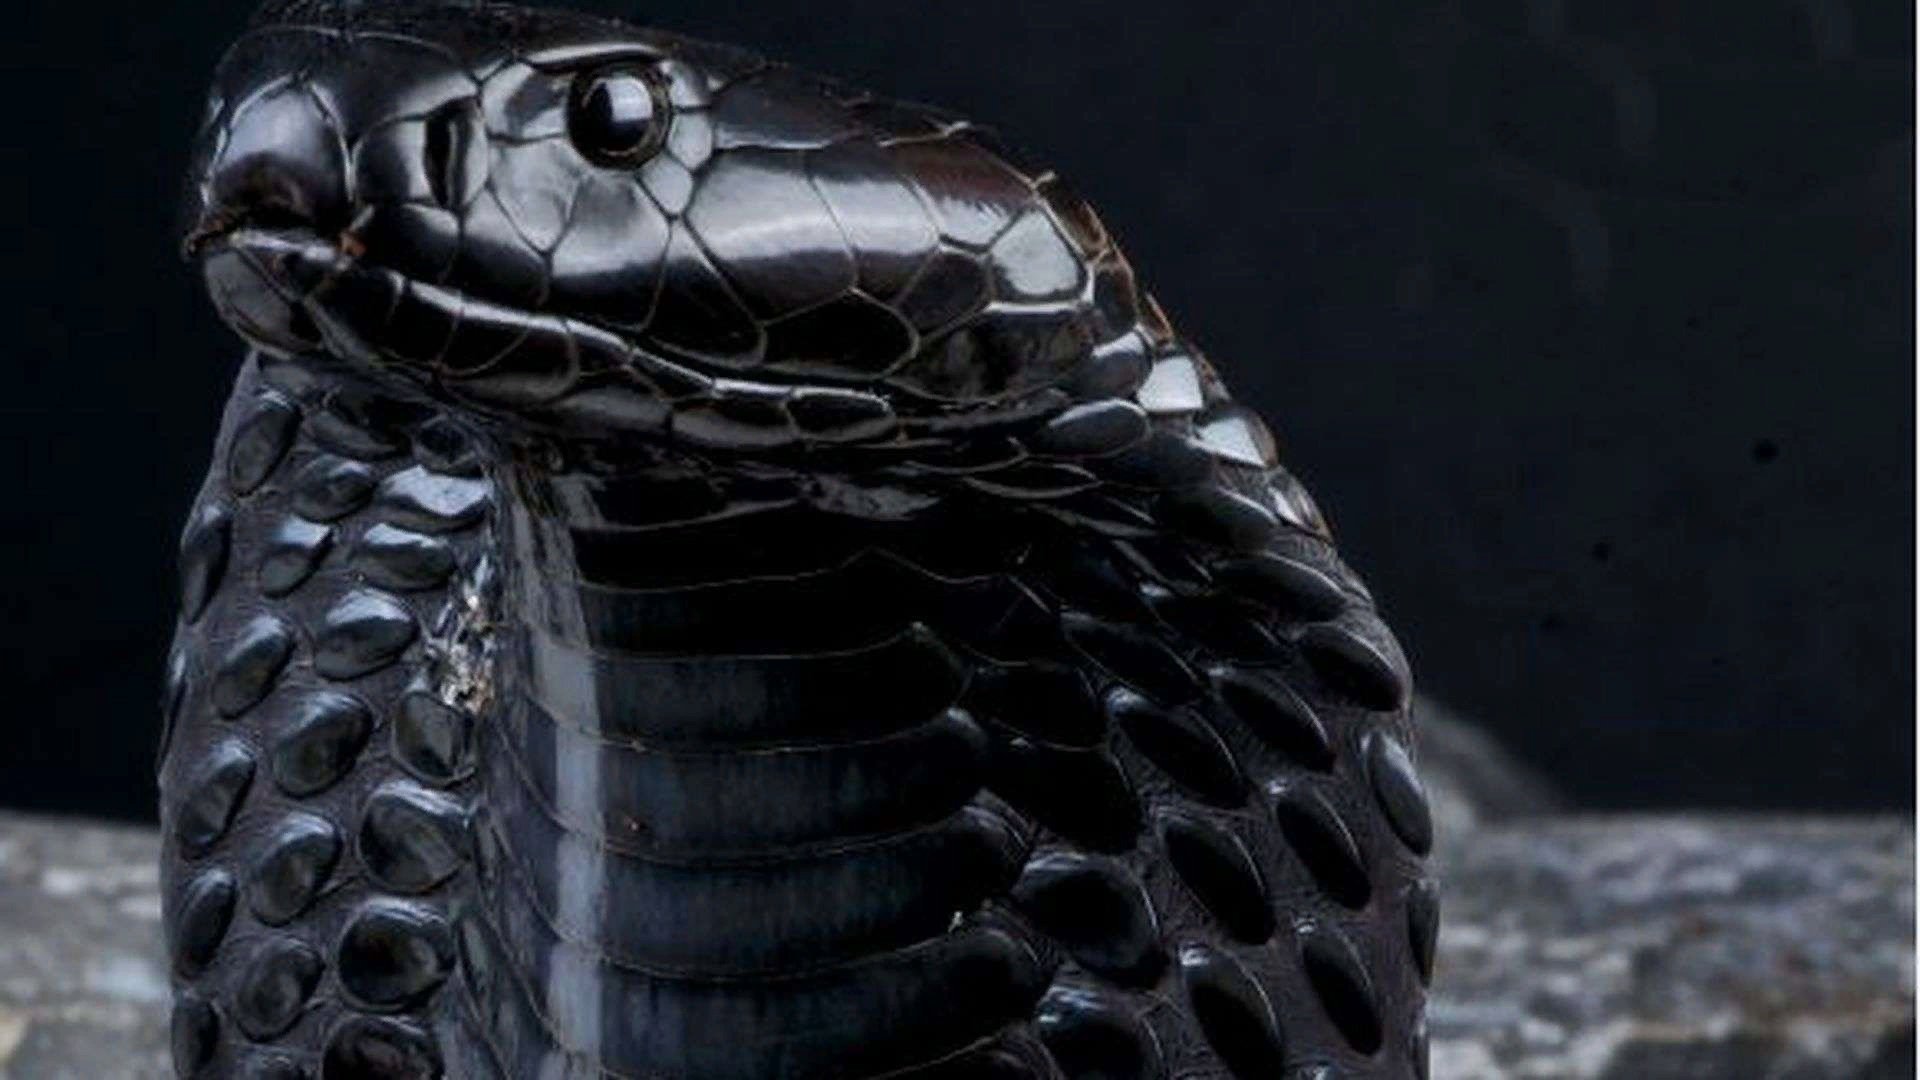 Змея Кобра Королевская чёрная